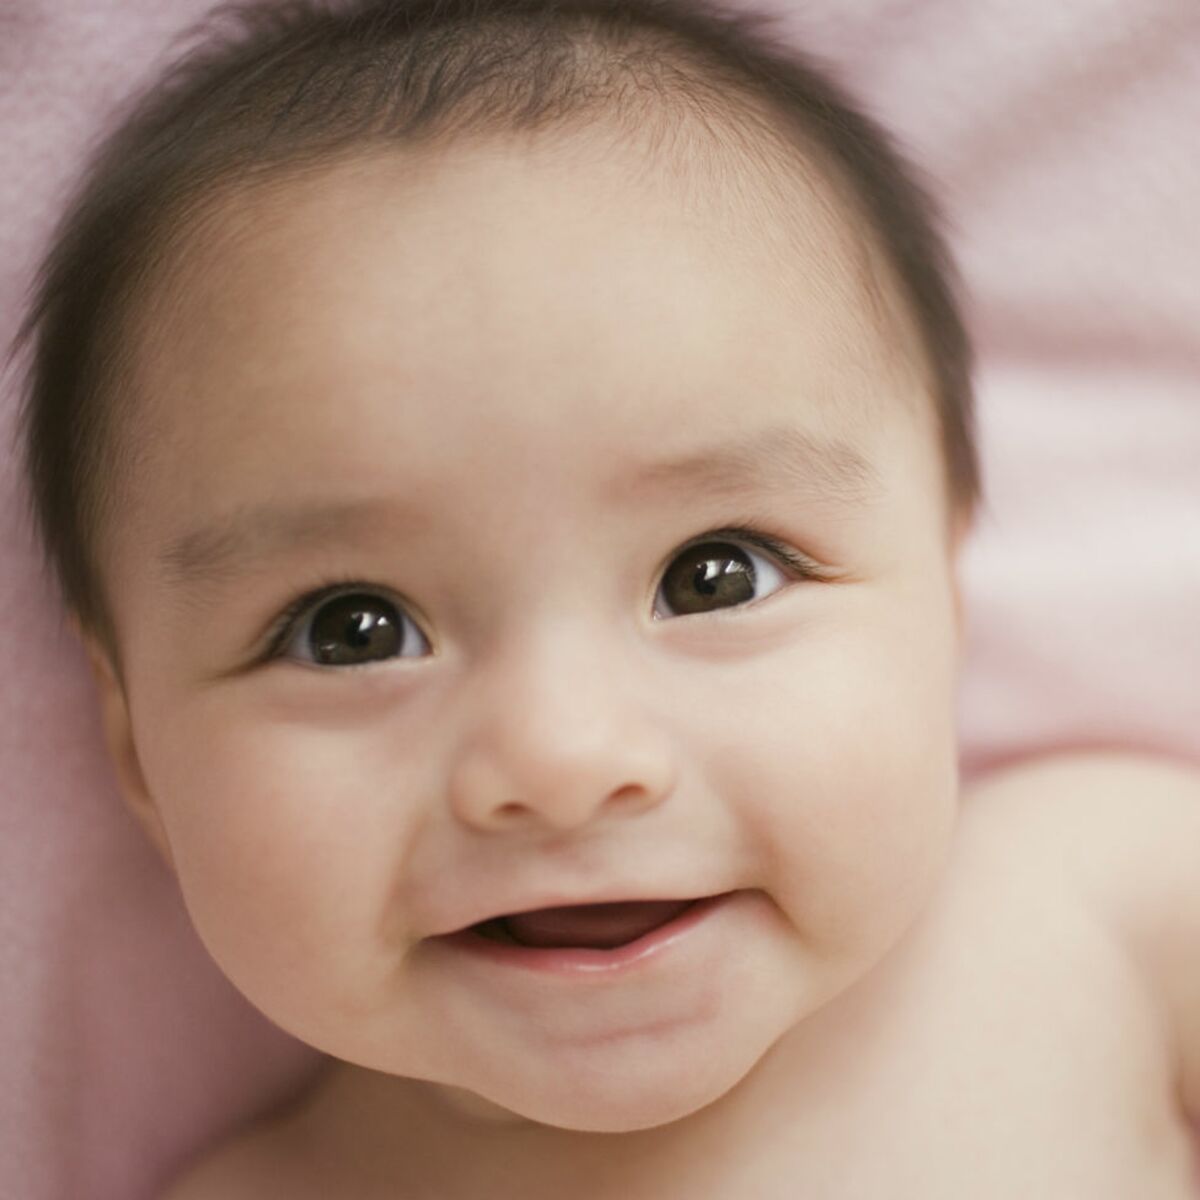 Bébé a 1 mois : développement, éveil et alimentation